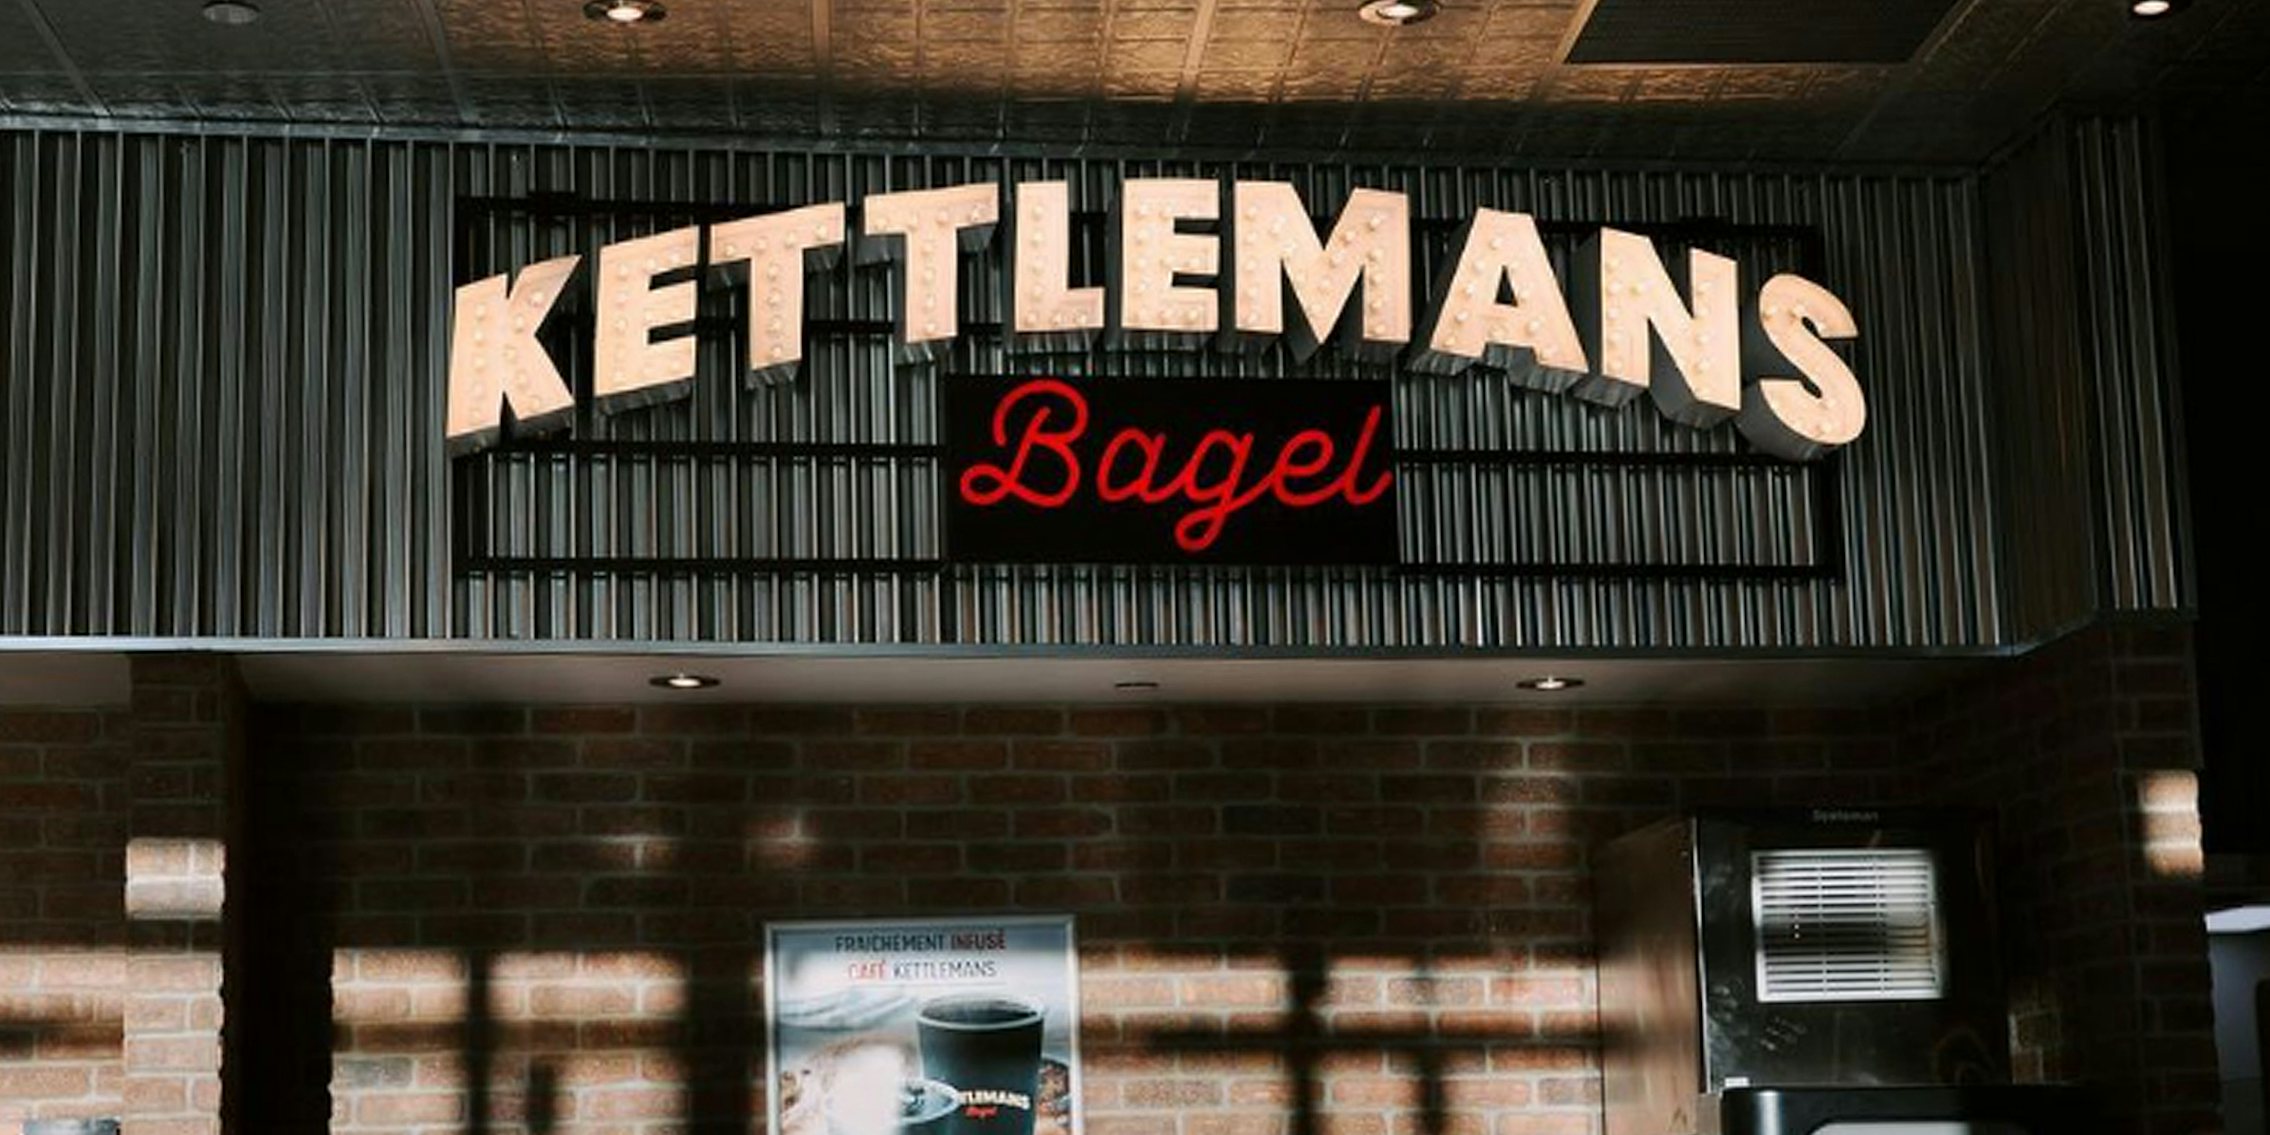 Kettleman's Bagel sign inside building